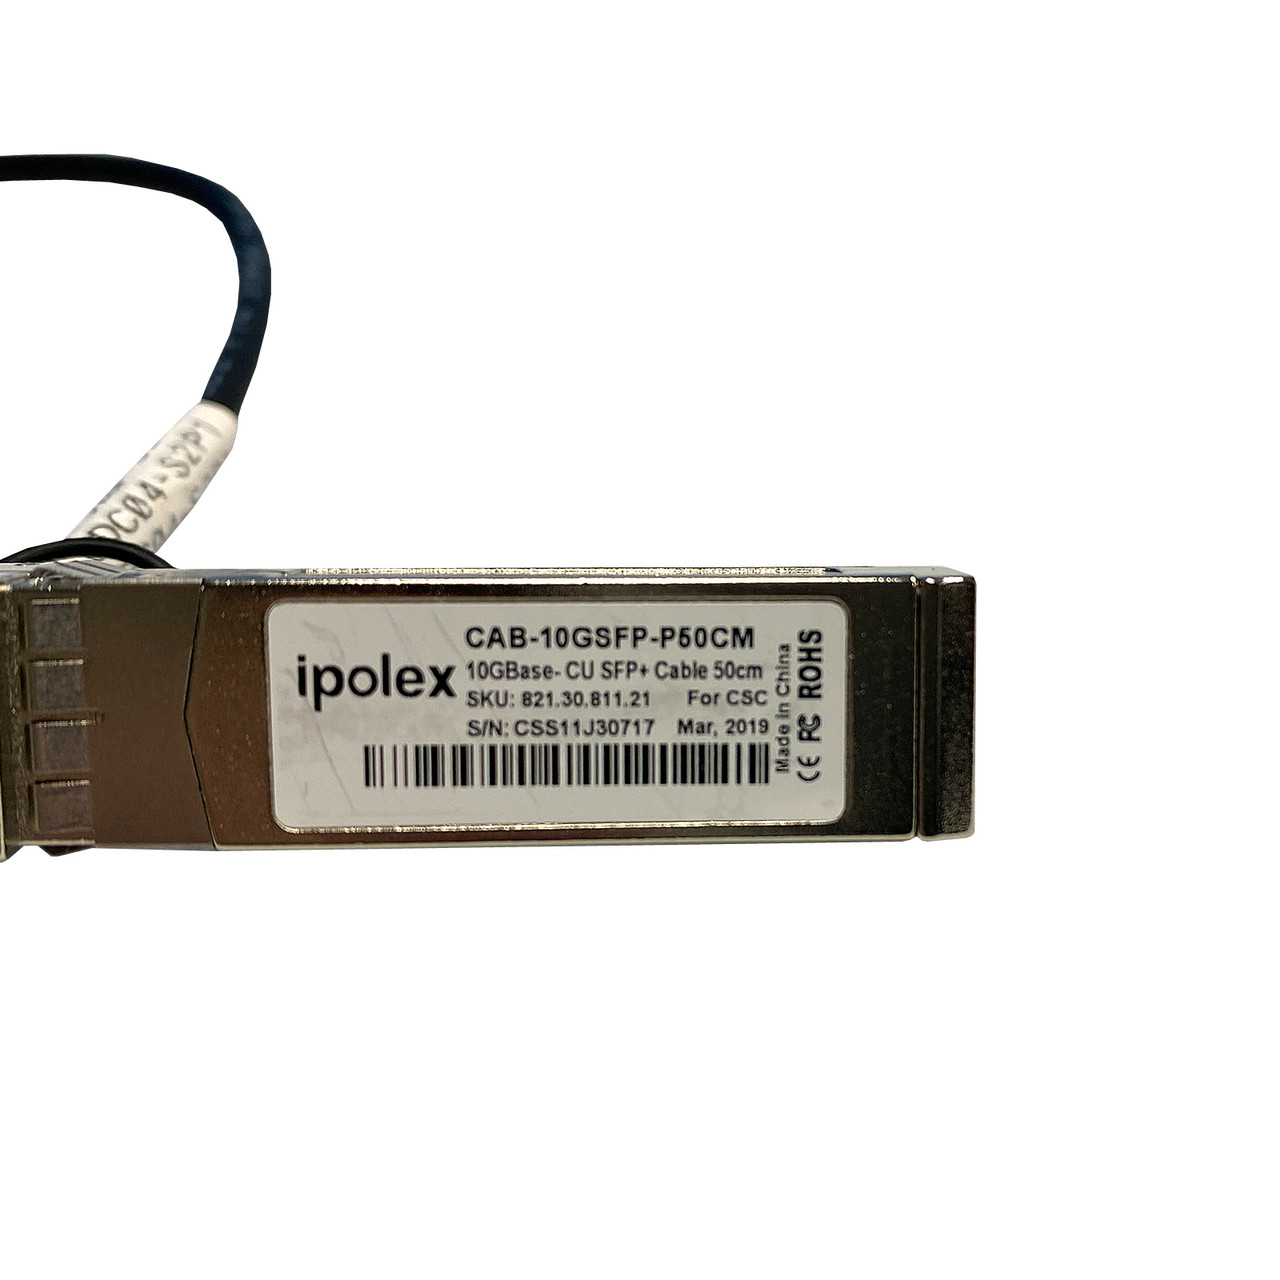 IPOLEX CAB-10GSFP-P50CM IPOLEX 50CM SFP+ DAC Cable